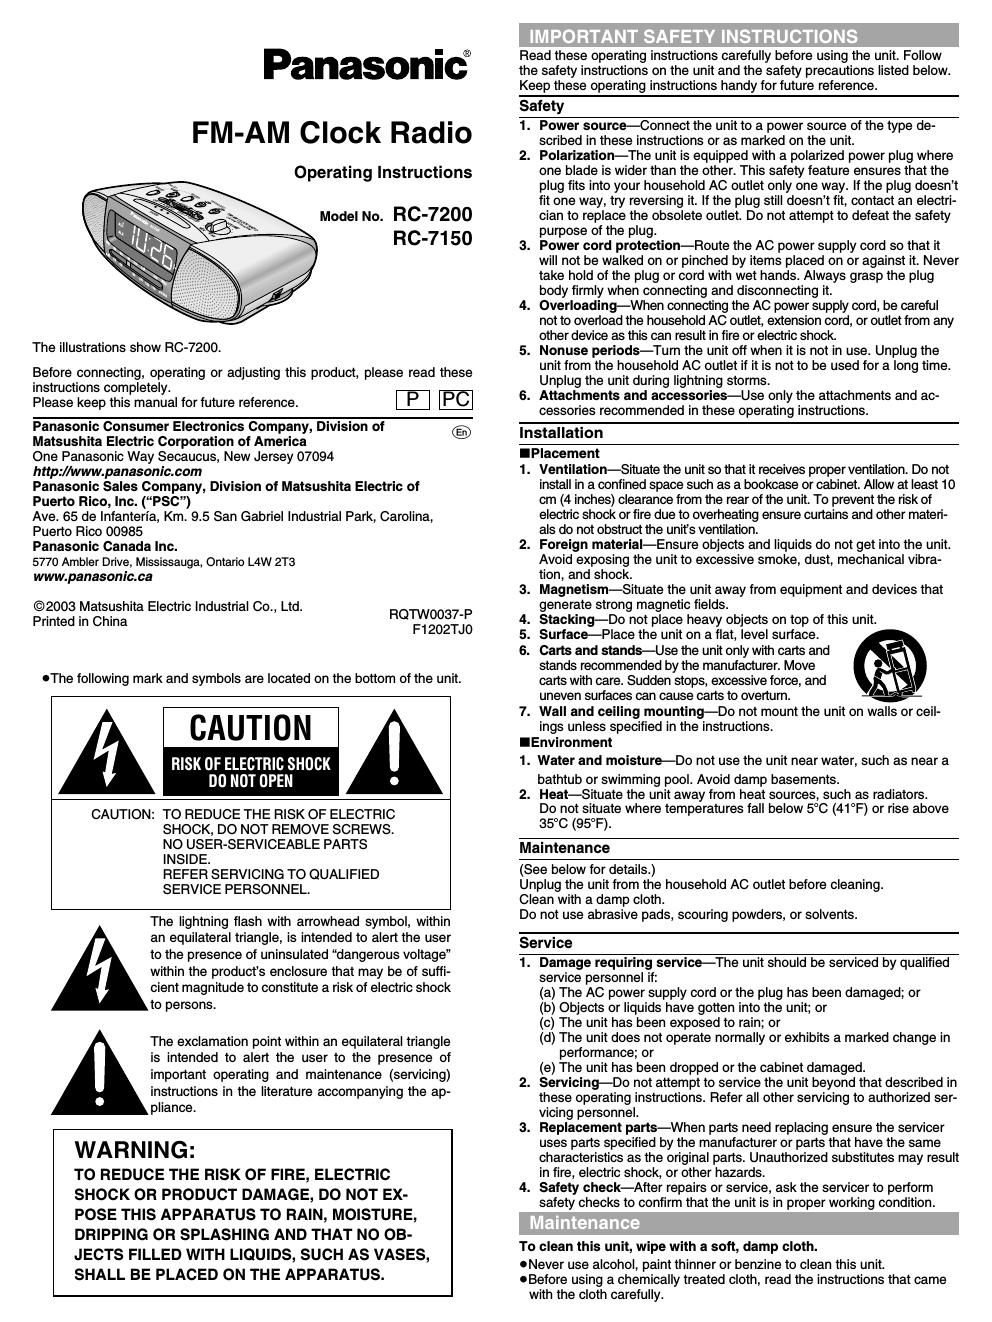 panasonic rc 7200 owners manual